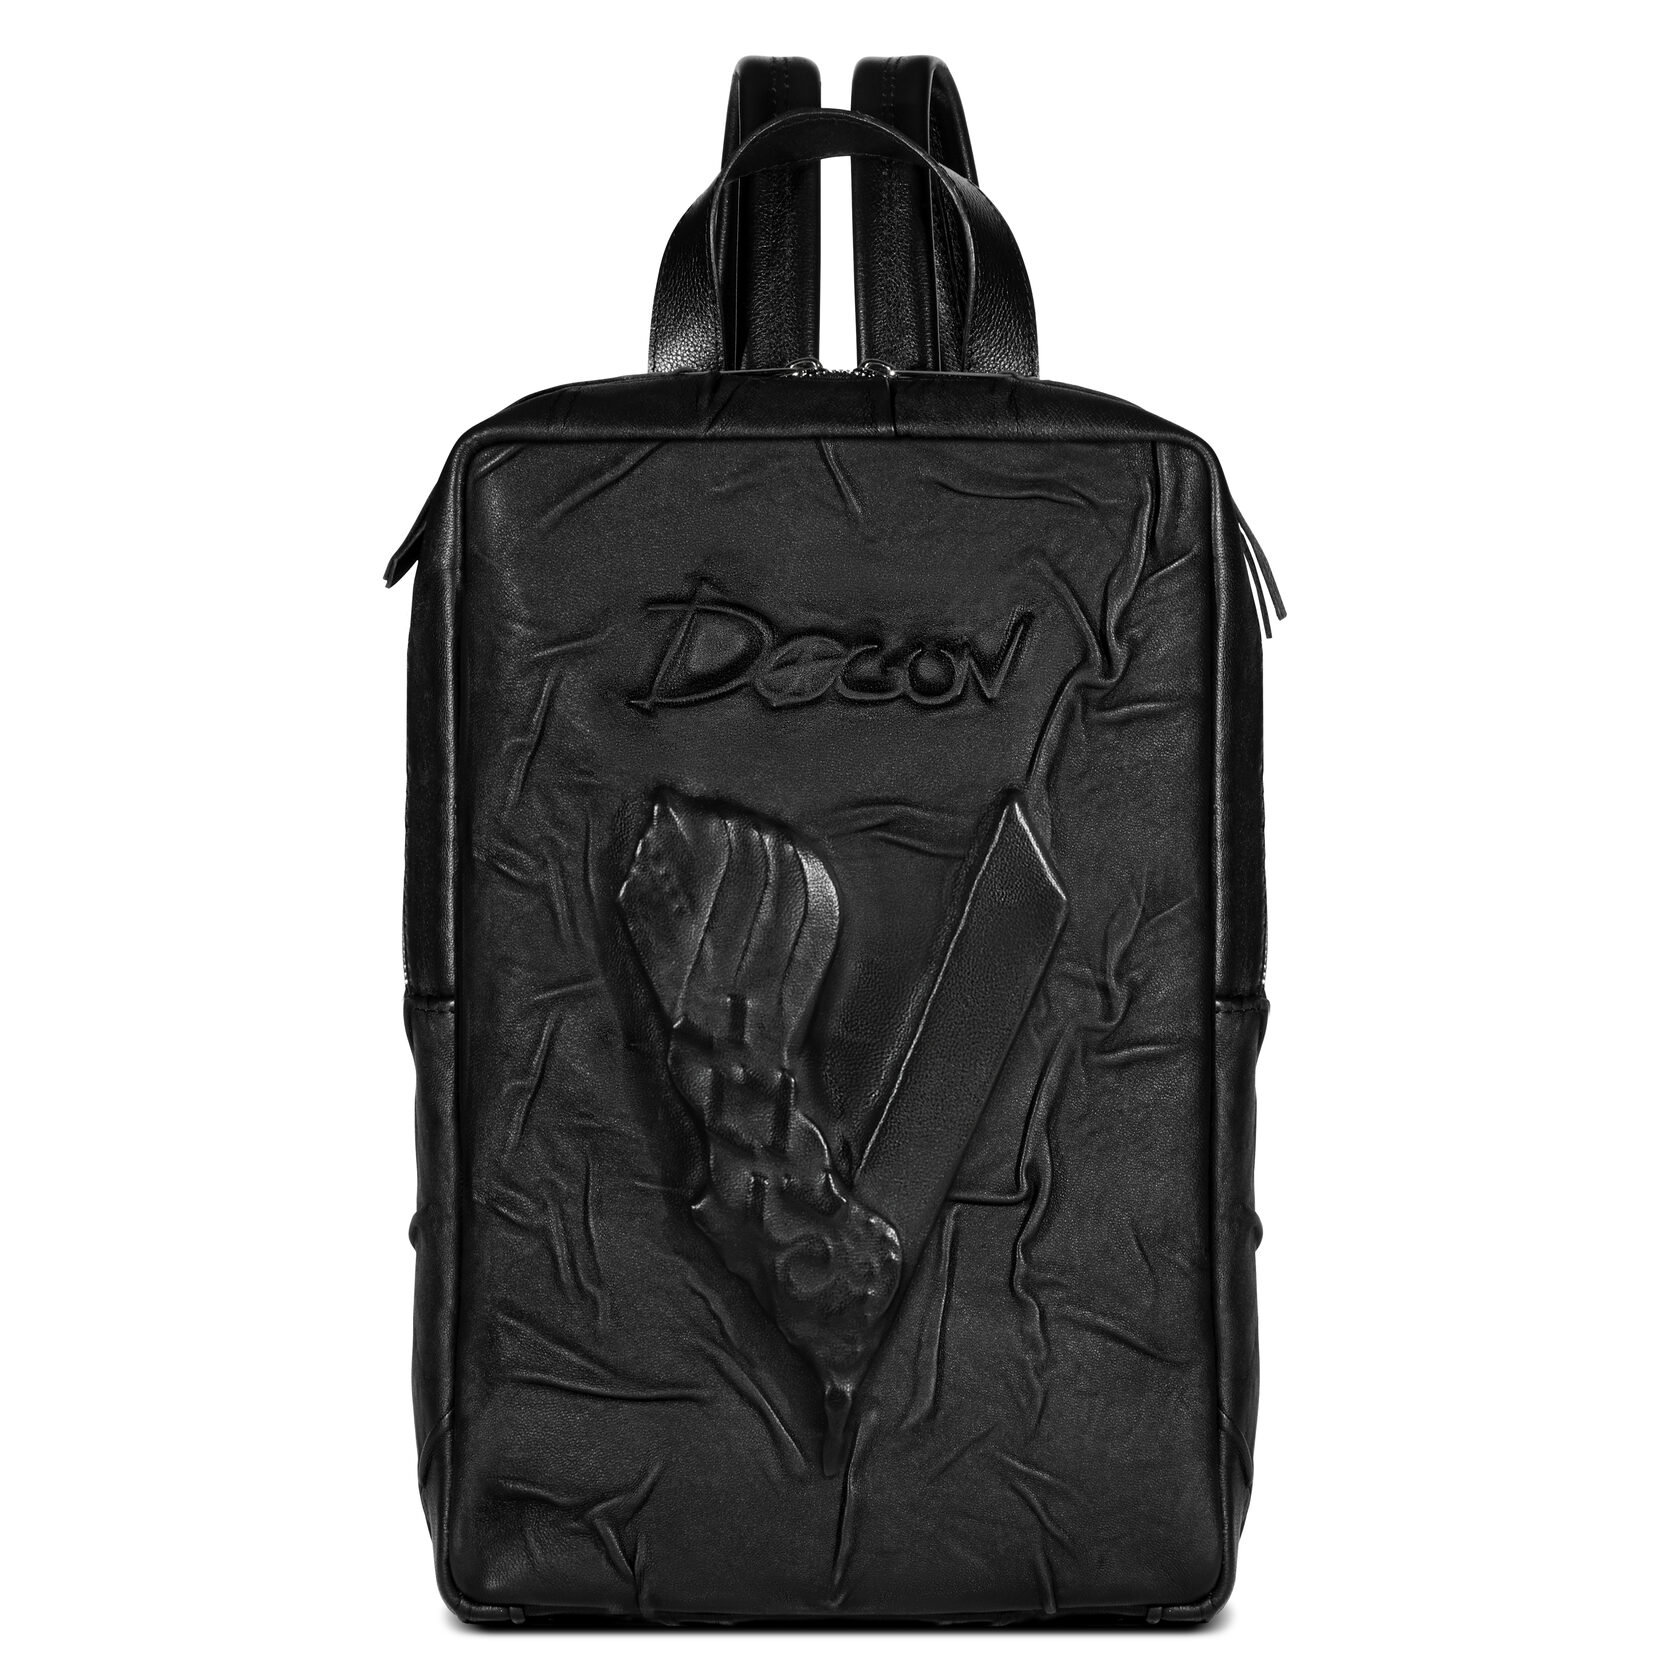 Рюкзак унисекс DAGON viking черный, 37x24x8 см